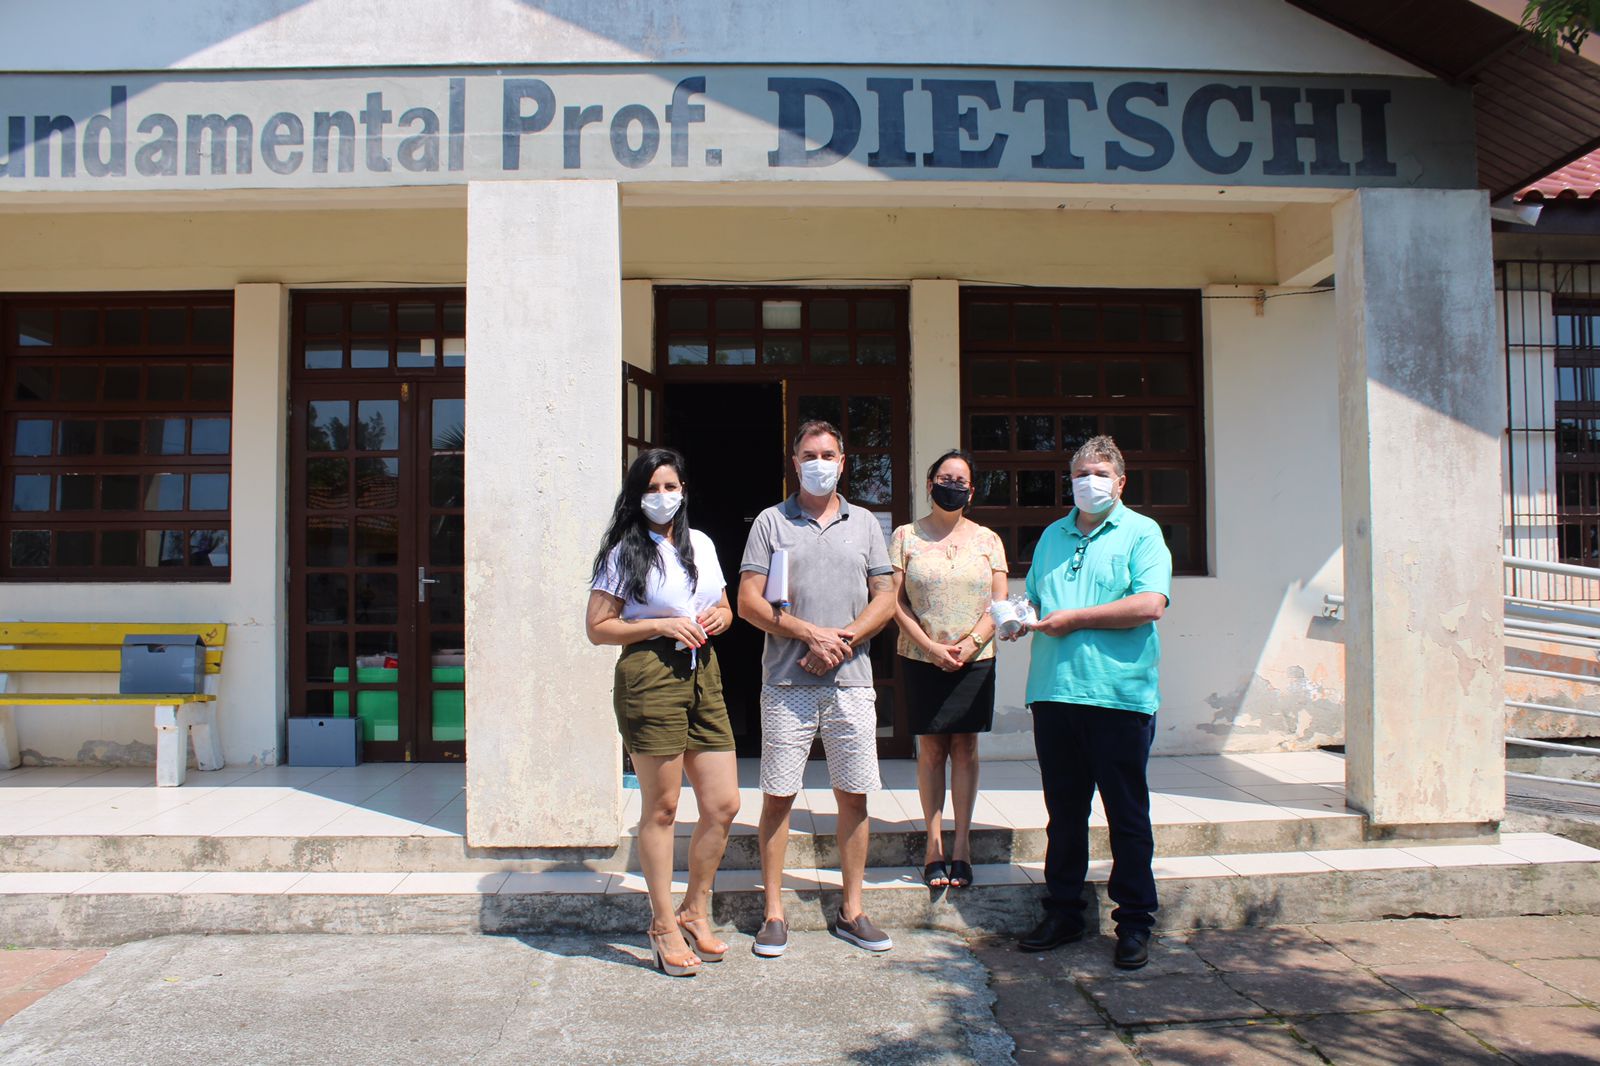 Com a entrega oficial das chaves, Escola de Ensino Fundamental Professor Dietschi passa a ser municipal